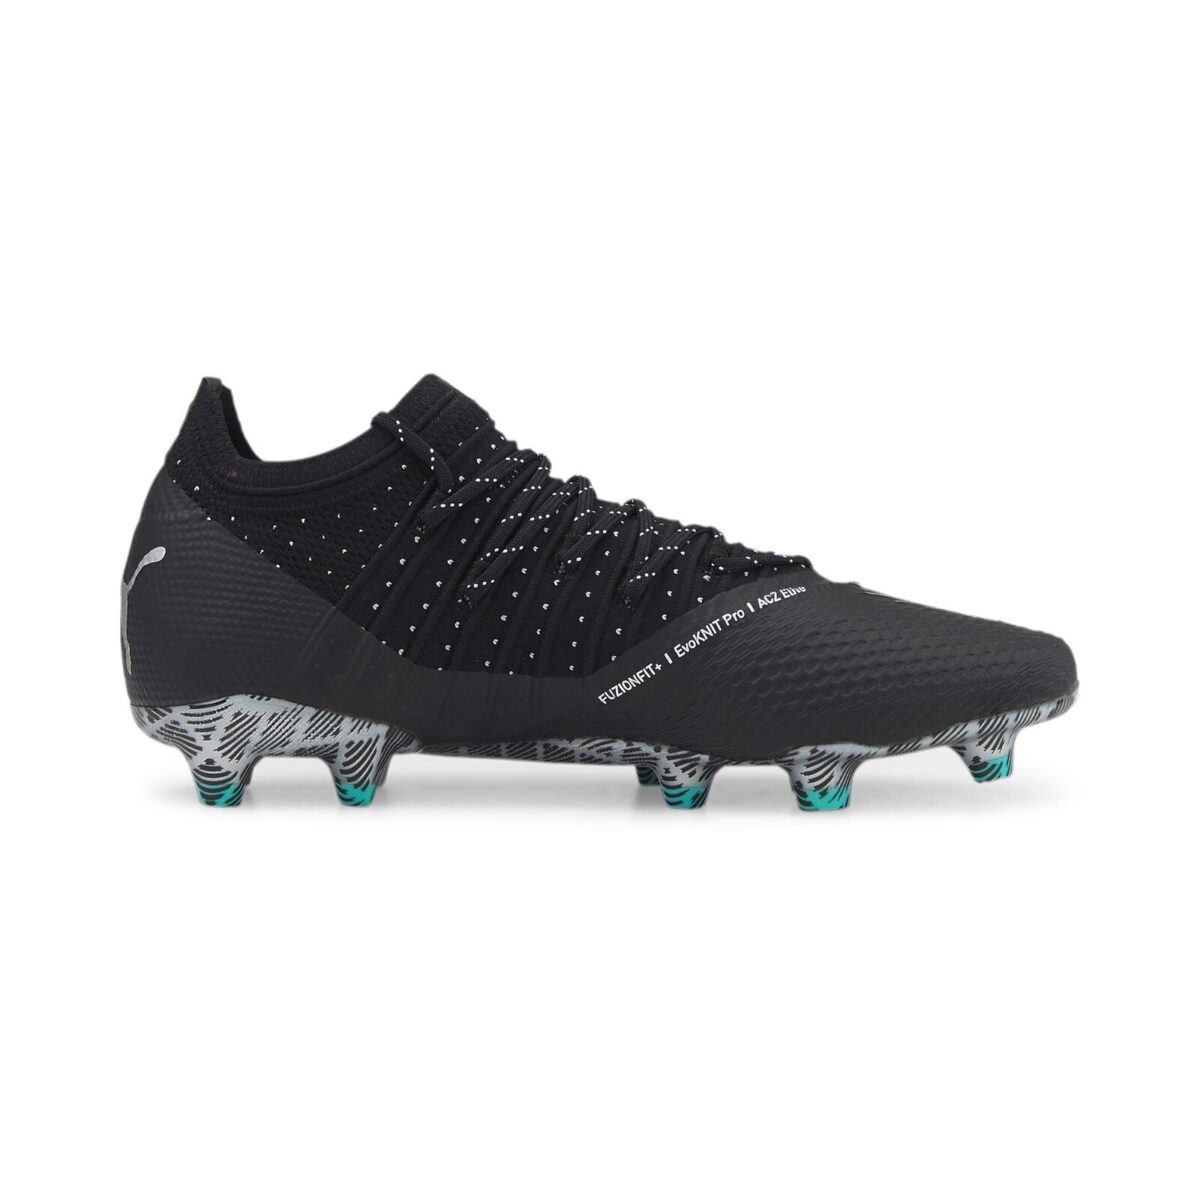 נעלי כדורגל פומה שחור/לבן Puma Future Z 1.4 FG/AG שחורות מקצועיות